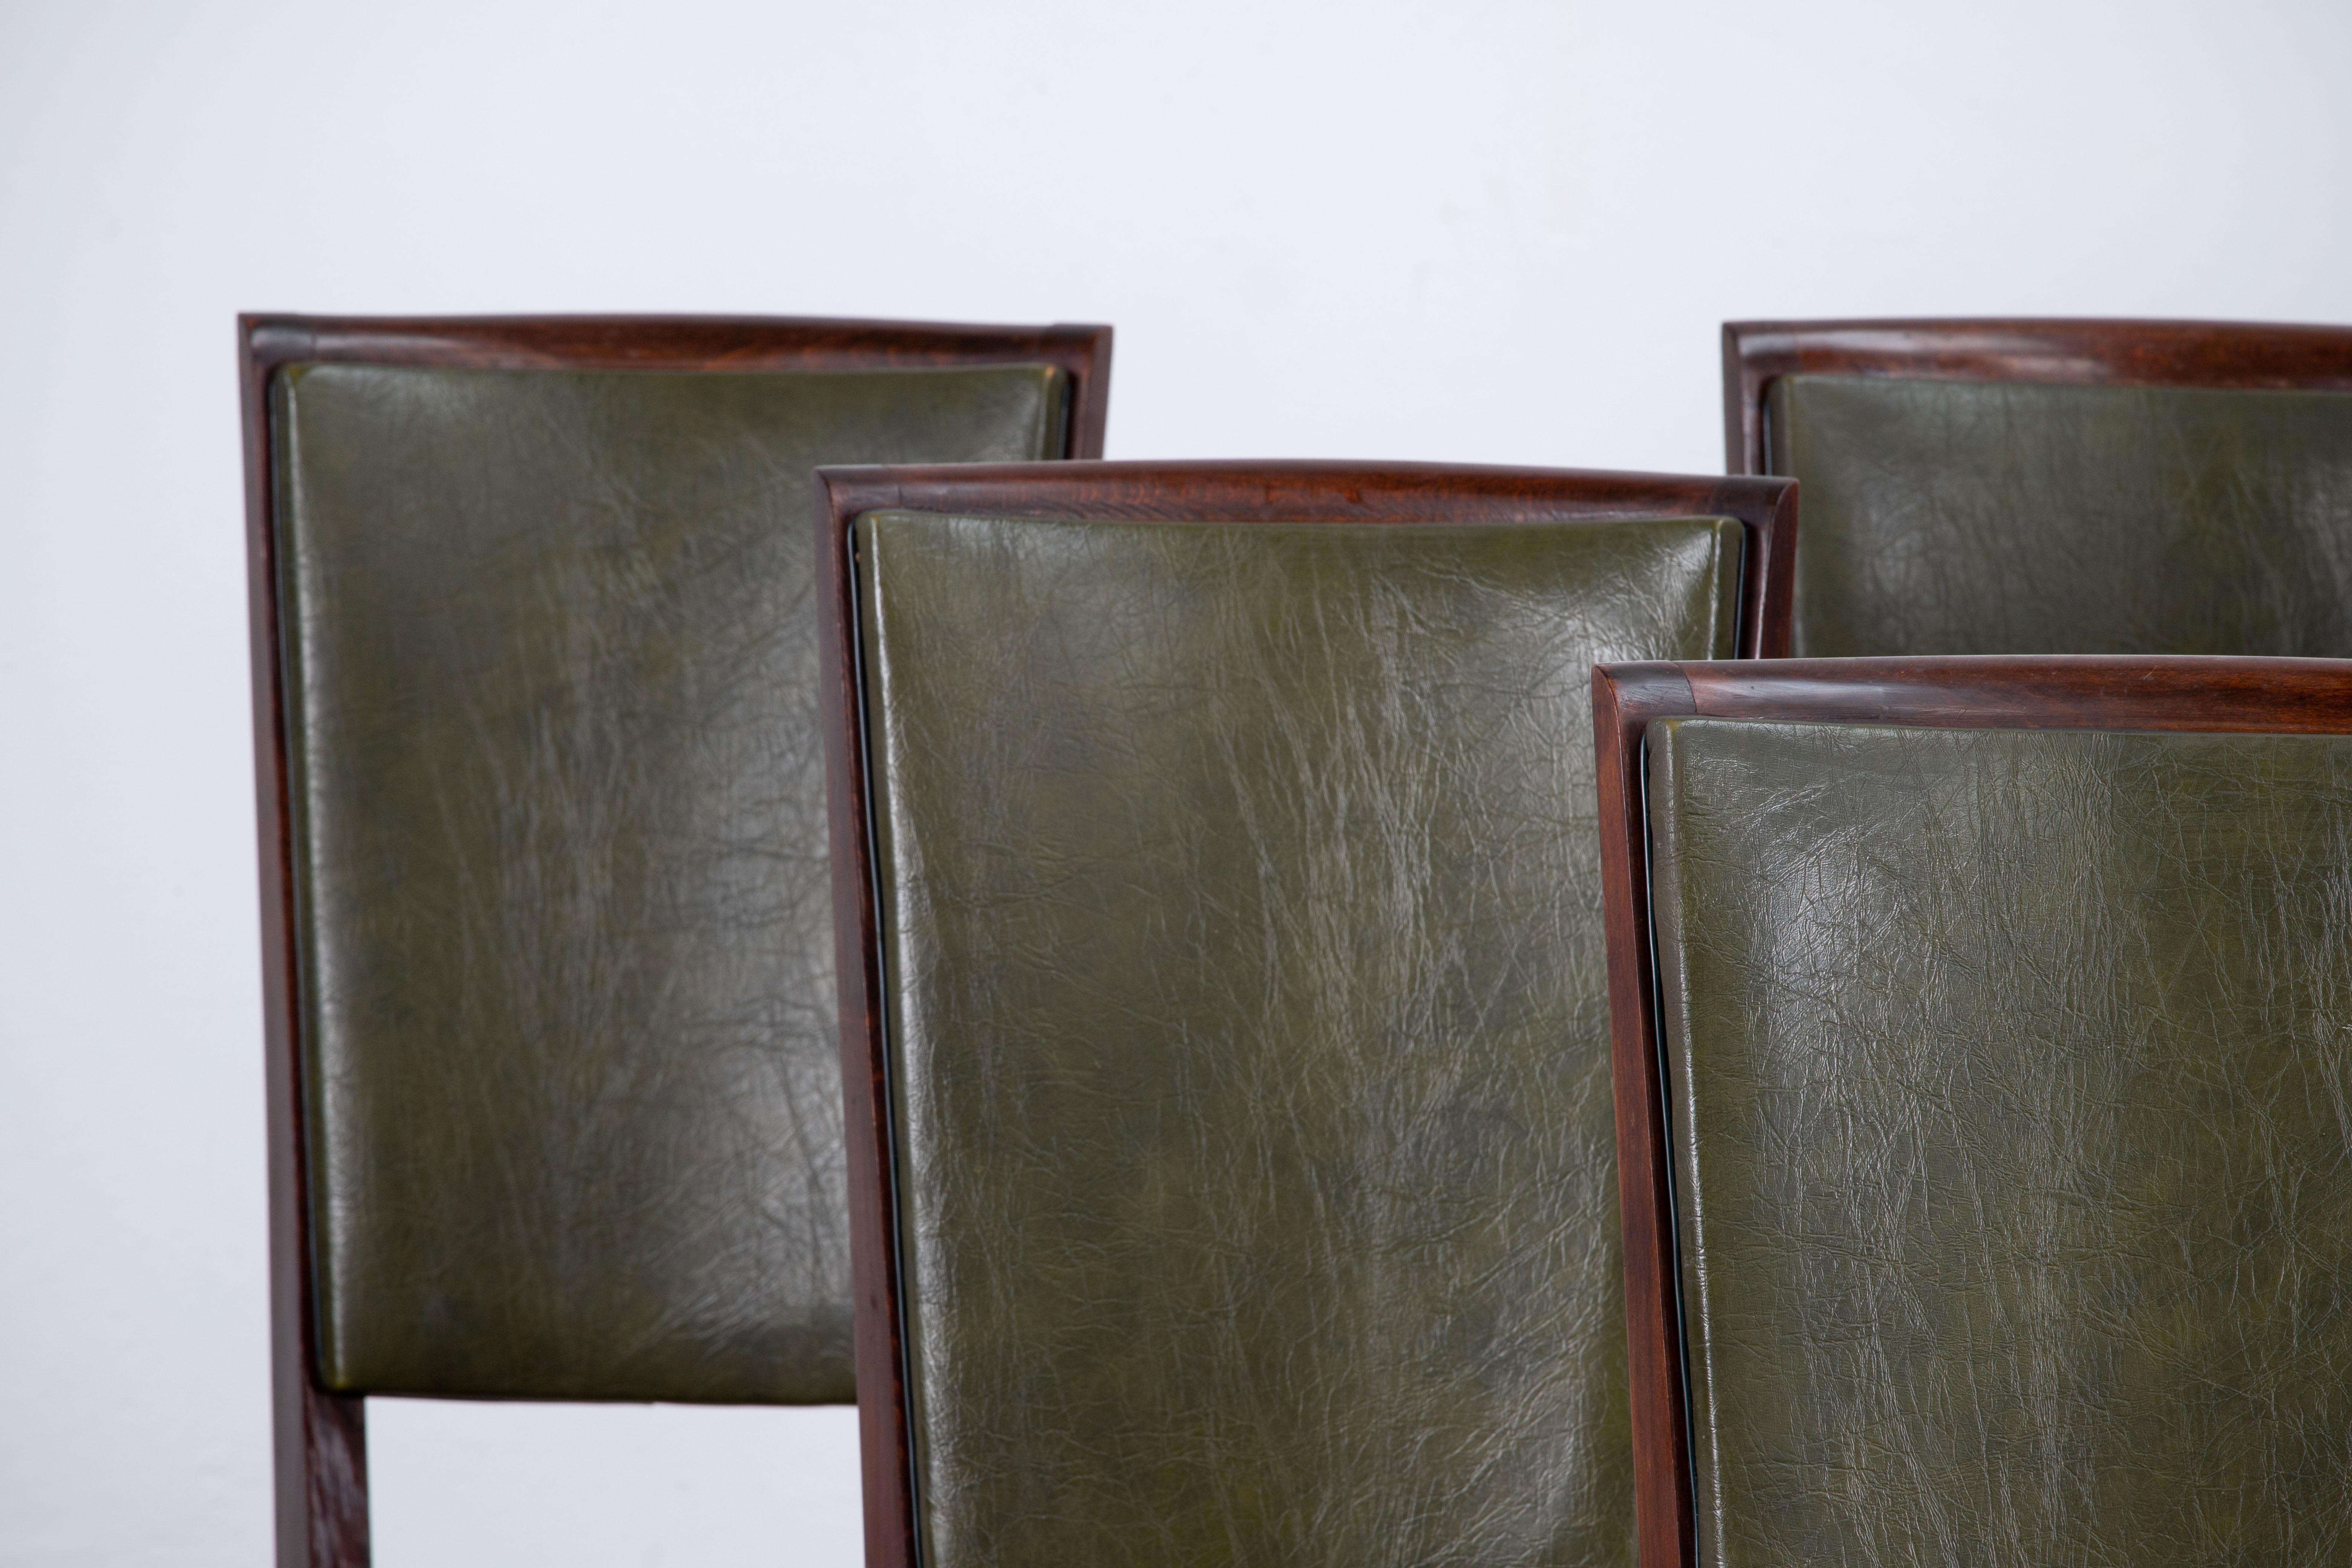 Ensemble de six chaises à haut dossier tapissées et recouvertes de vynil blanc, présentant des éléments de design français traditionnel dans une finition en chêne profond.

Dans le style de René Prou, Albert-Lucien Guenot, Pomone, André Arbus,